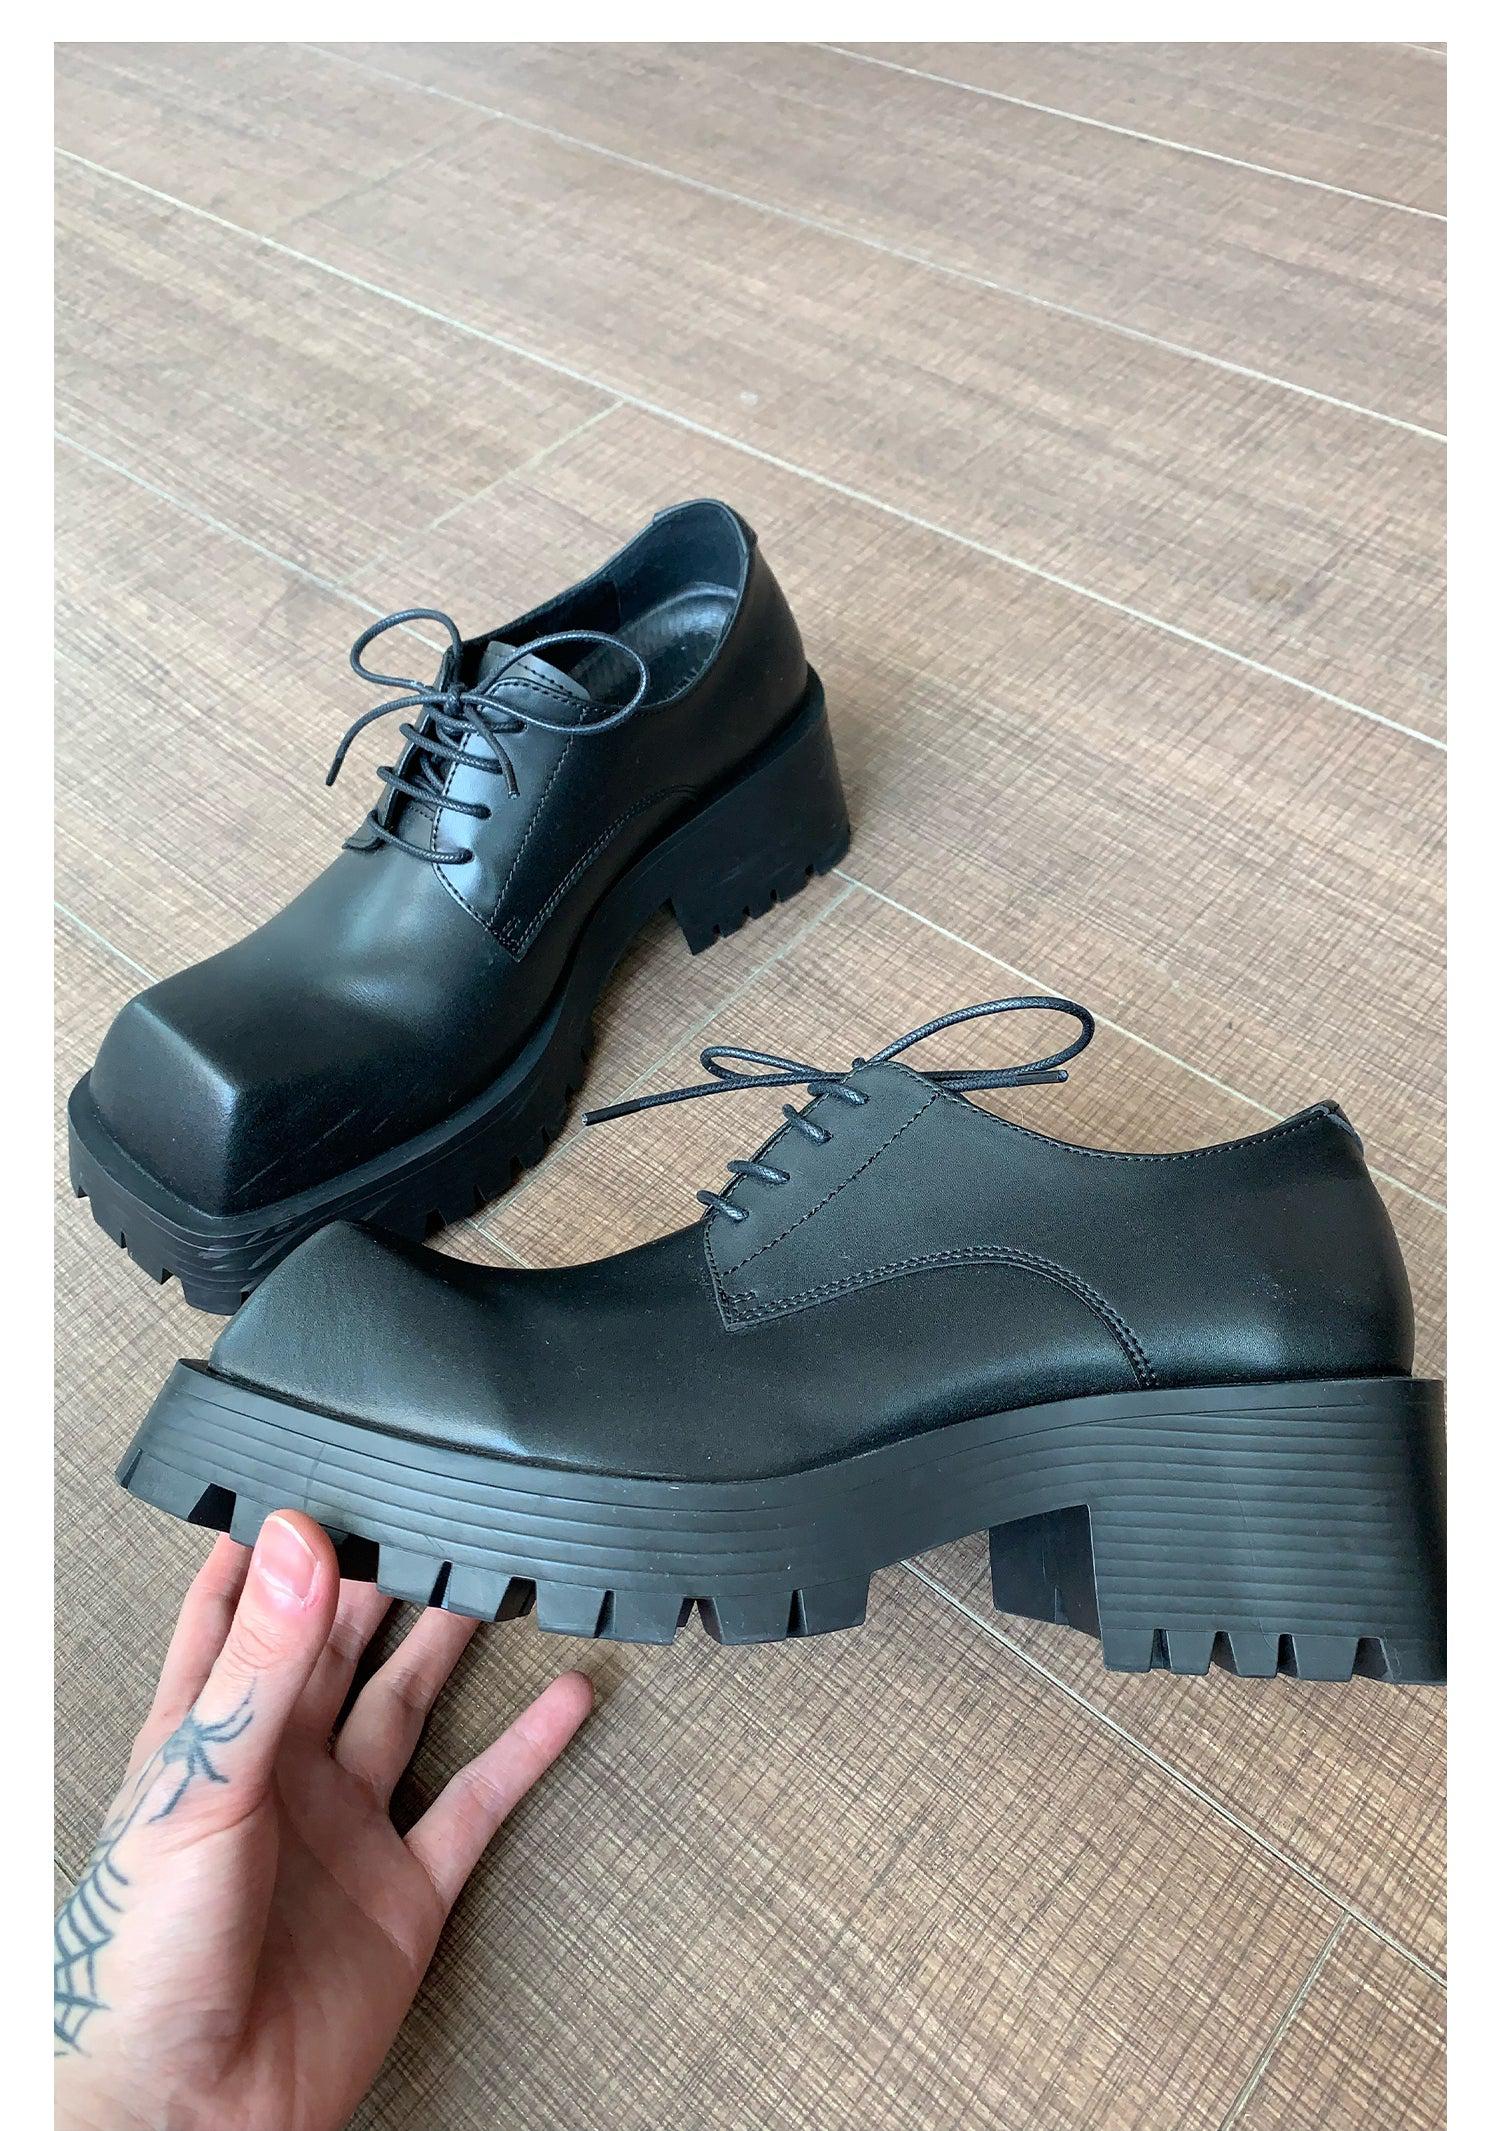 Black Square Toe Leather Shoes – The Korean Fashion